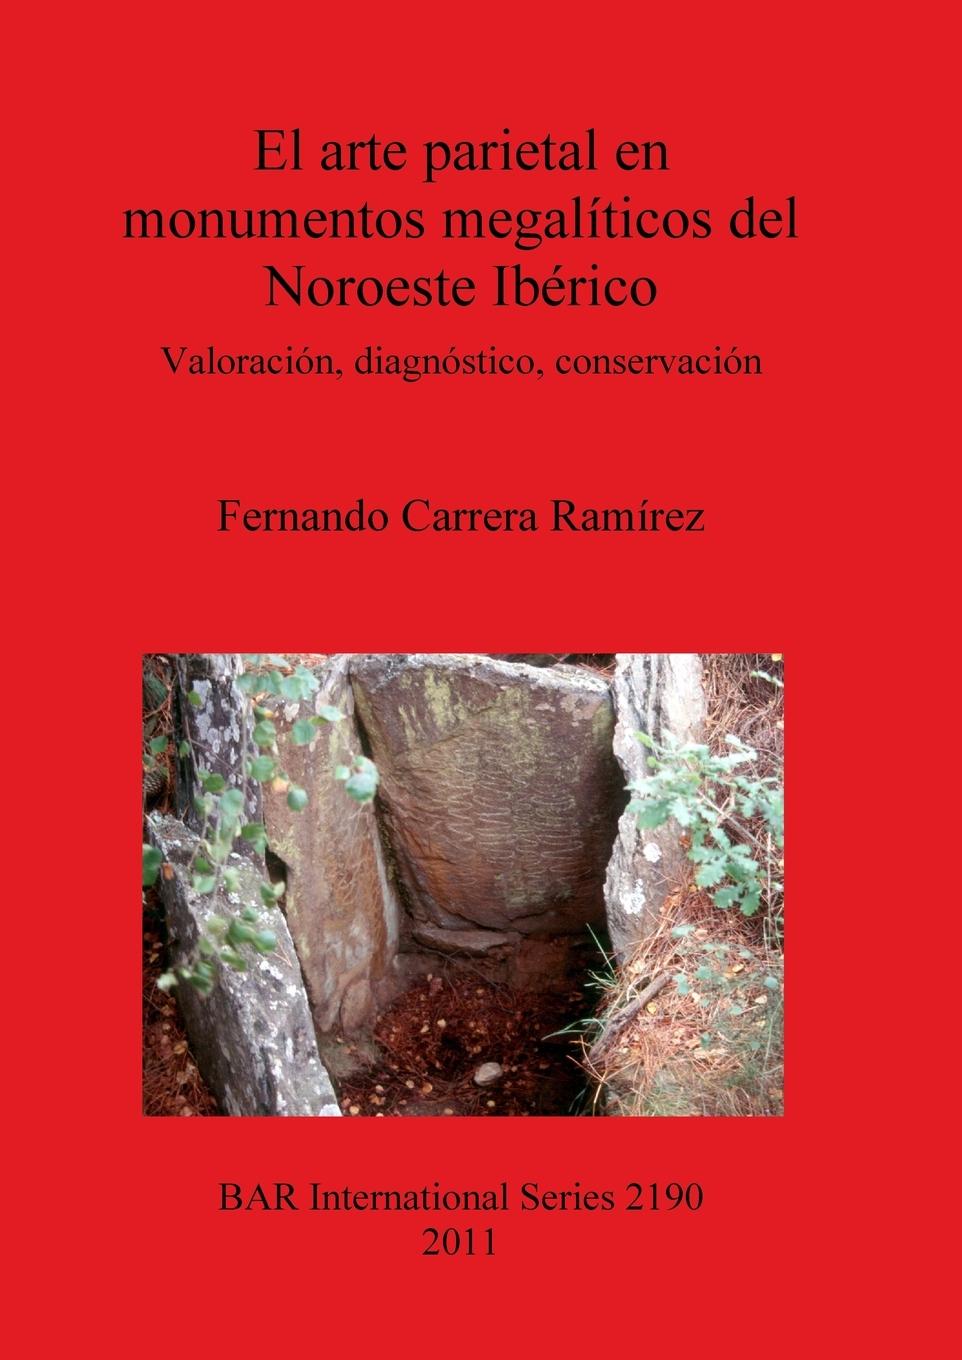 El arte parietal en monumentos megalíticos del Noroeste Ibérico - Carrera Ramírez, Fernando